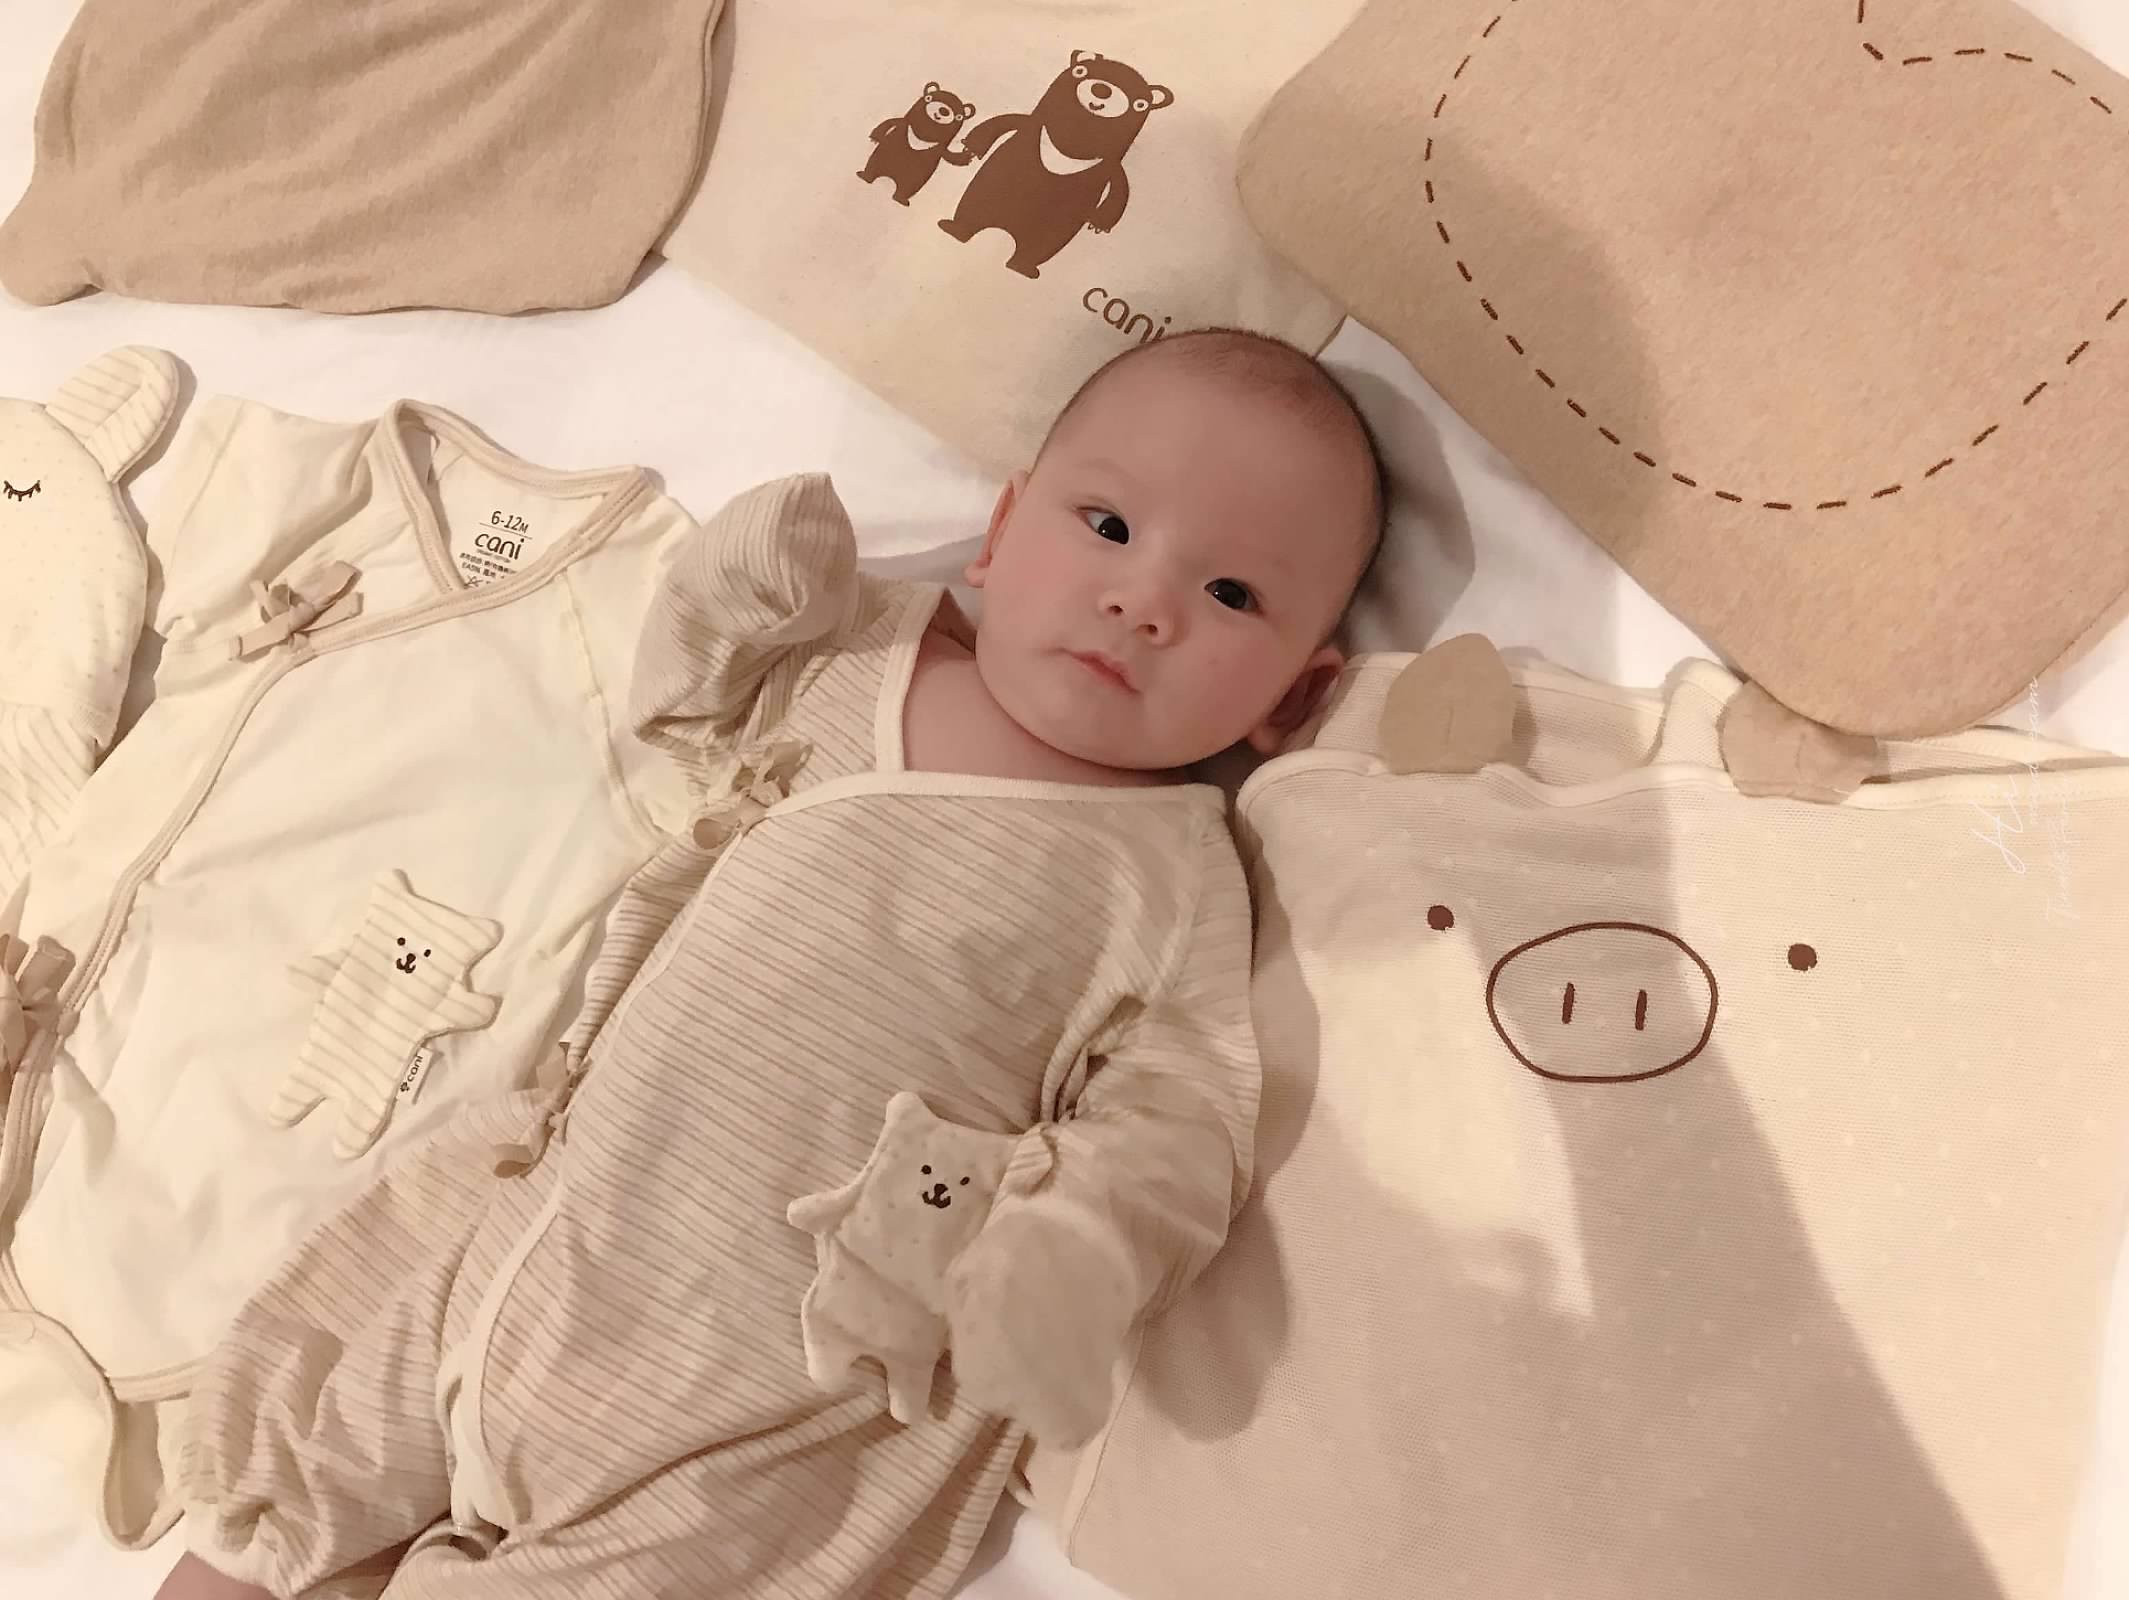 [寶寶紀錄日記] cani有機棉 親生兒要用最好的 寶寶穿搭 irwave護頭枕/寶寶包巾/cani涼感棉被/包屁衣 育兒好物必買開箱